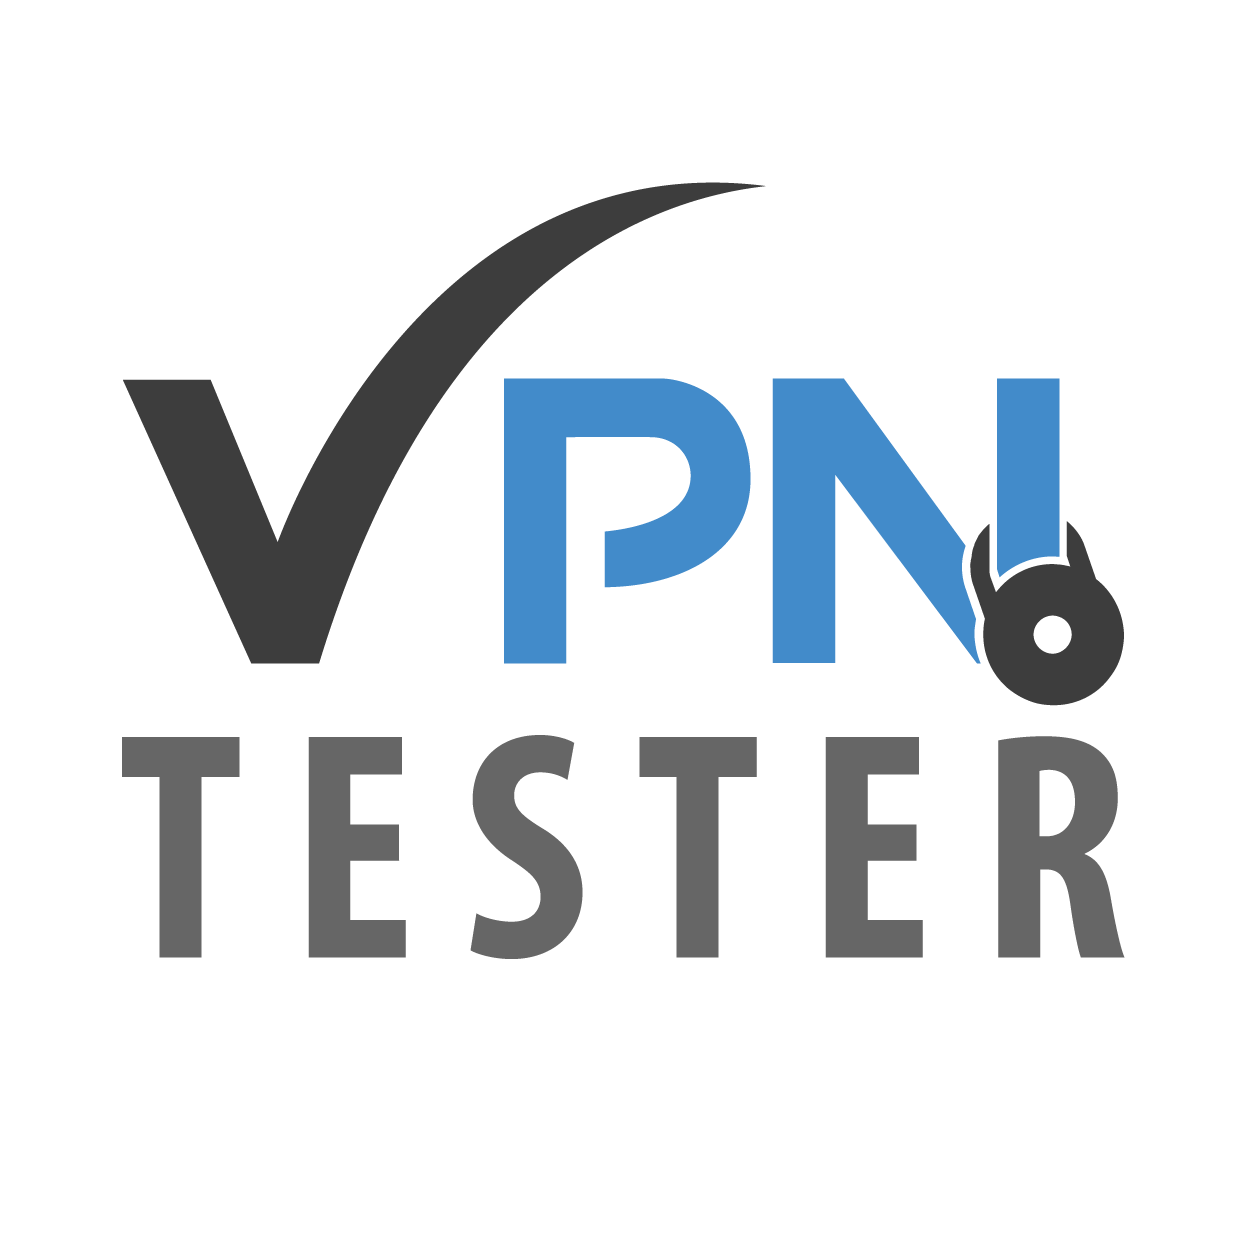 WebSecuritas VPN: Testbericht und meine Erfahrungen 1